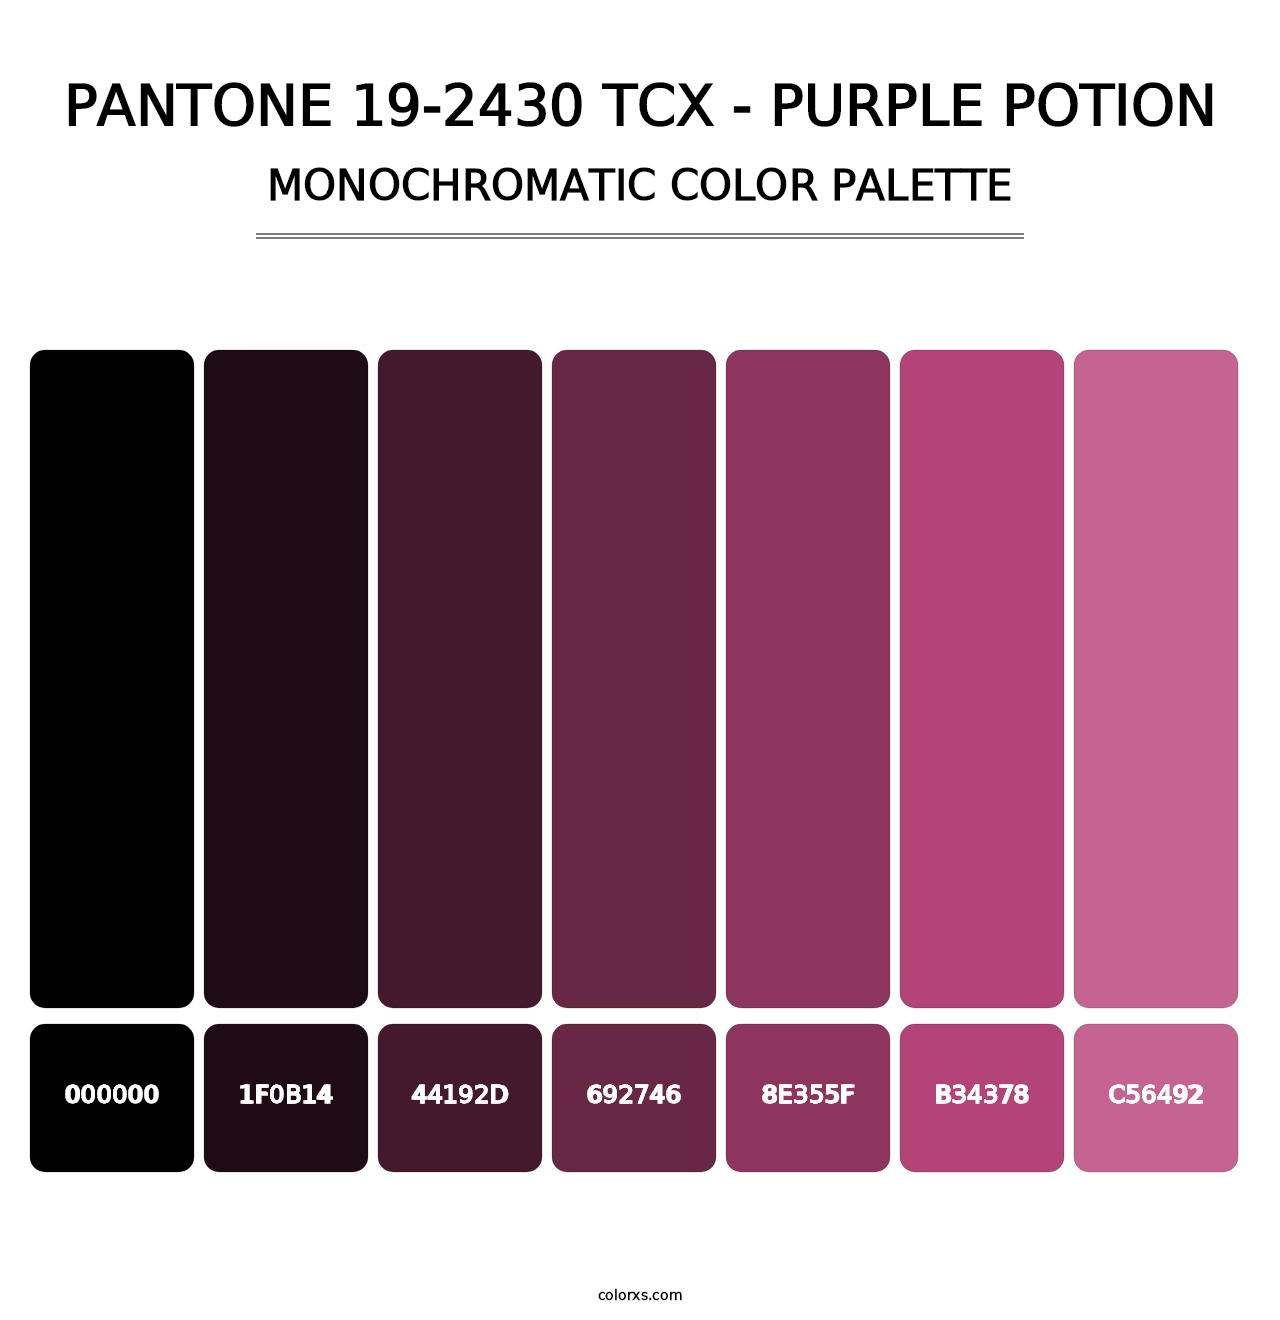 PANTONE 19-2430 TCX - Purple Potion - Monochromatic Color Palette